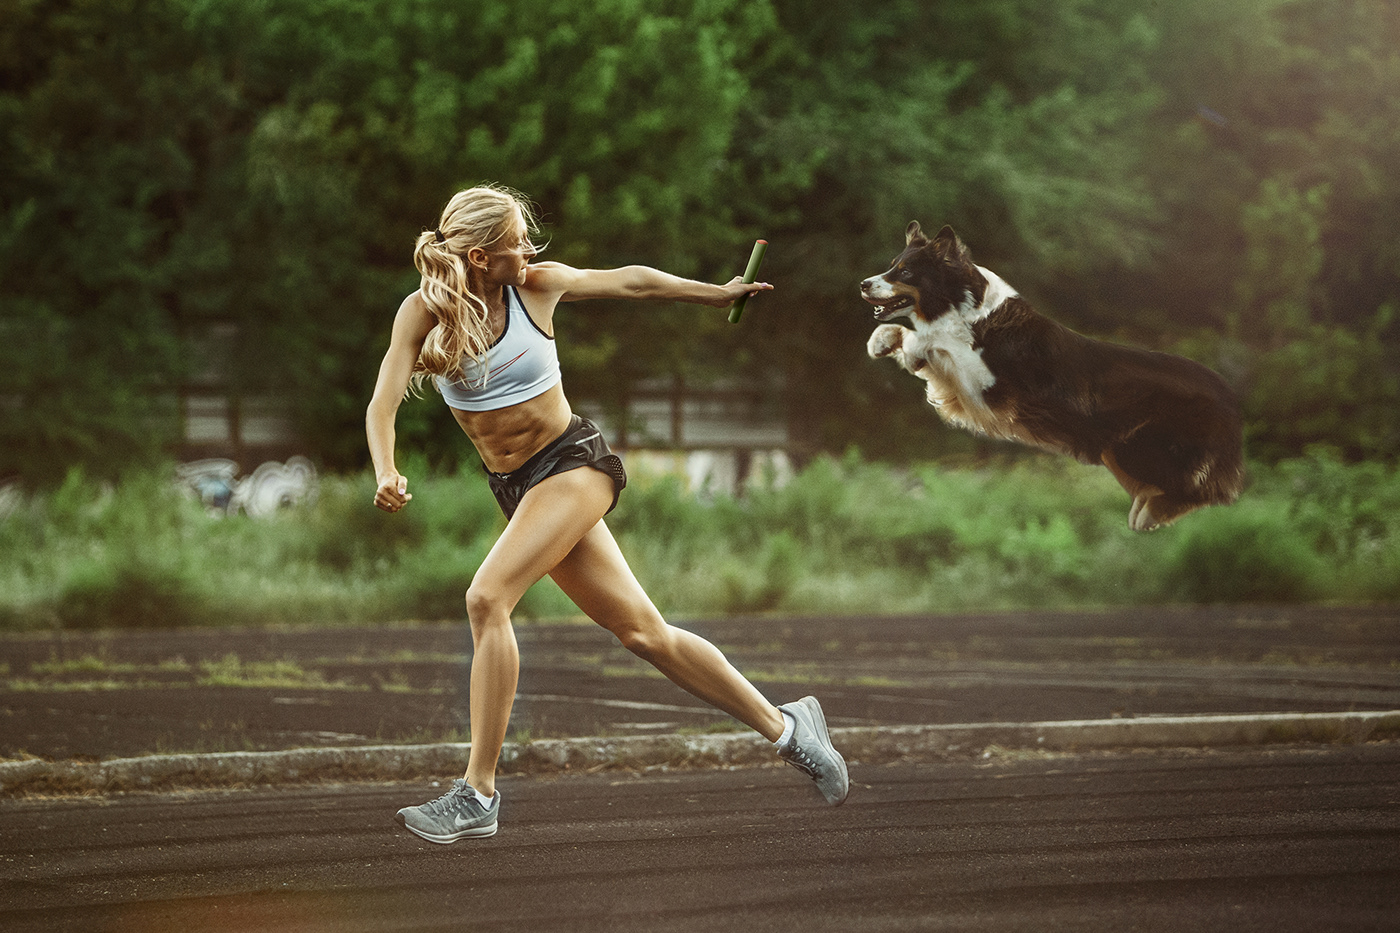 dog jump life OLIMPIC run sport training